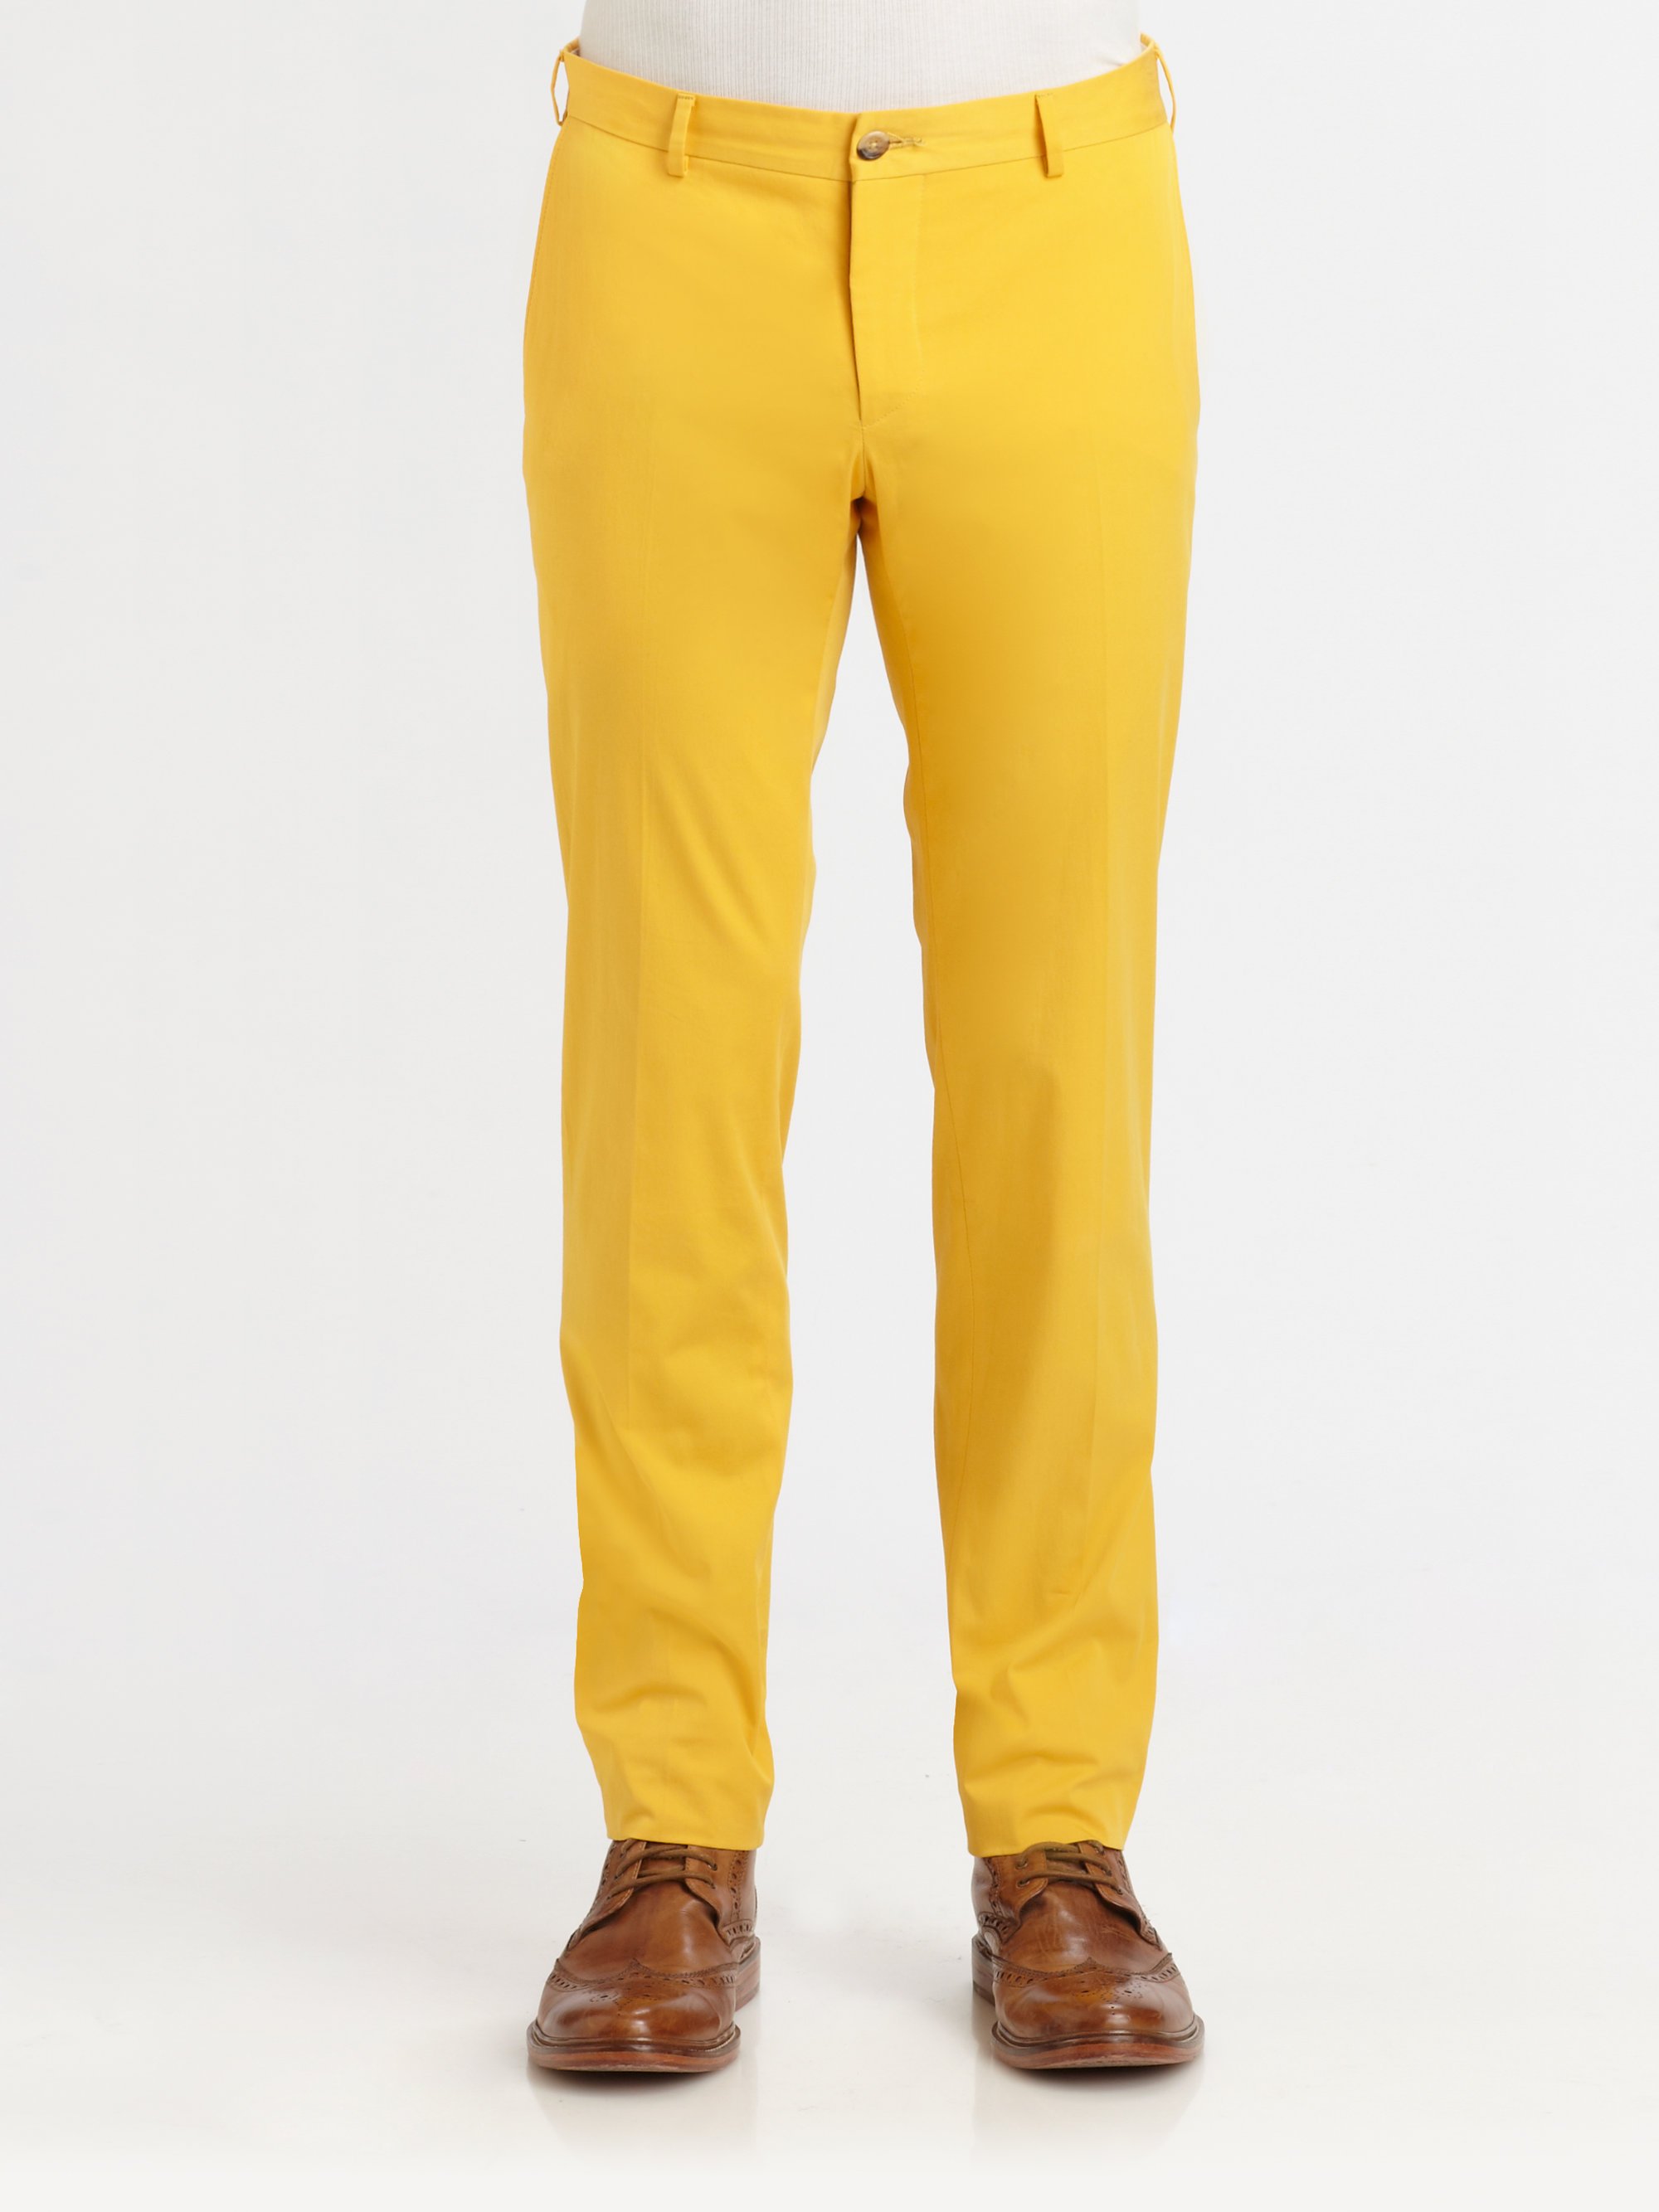 Желтые штаны мужские. Желтые классические мужские брюки. Чиносы желтые. Желтые брюки подростковые для мальчика. Жёлтые брюки из хлопкп.